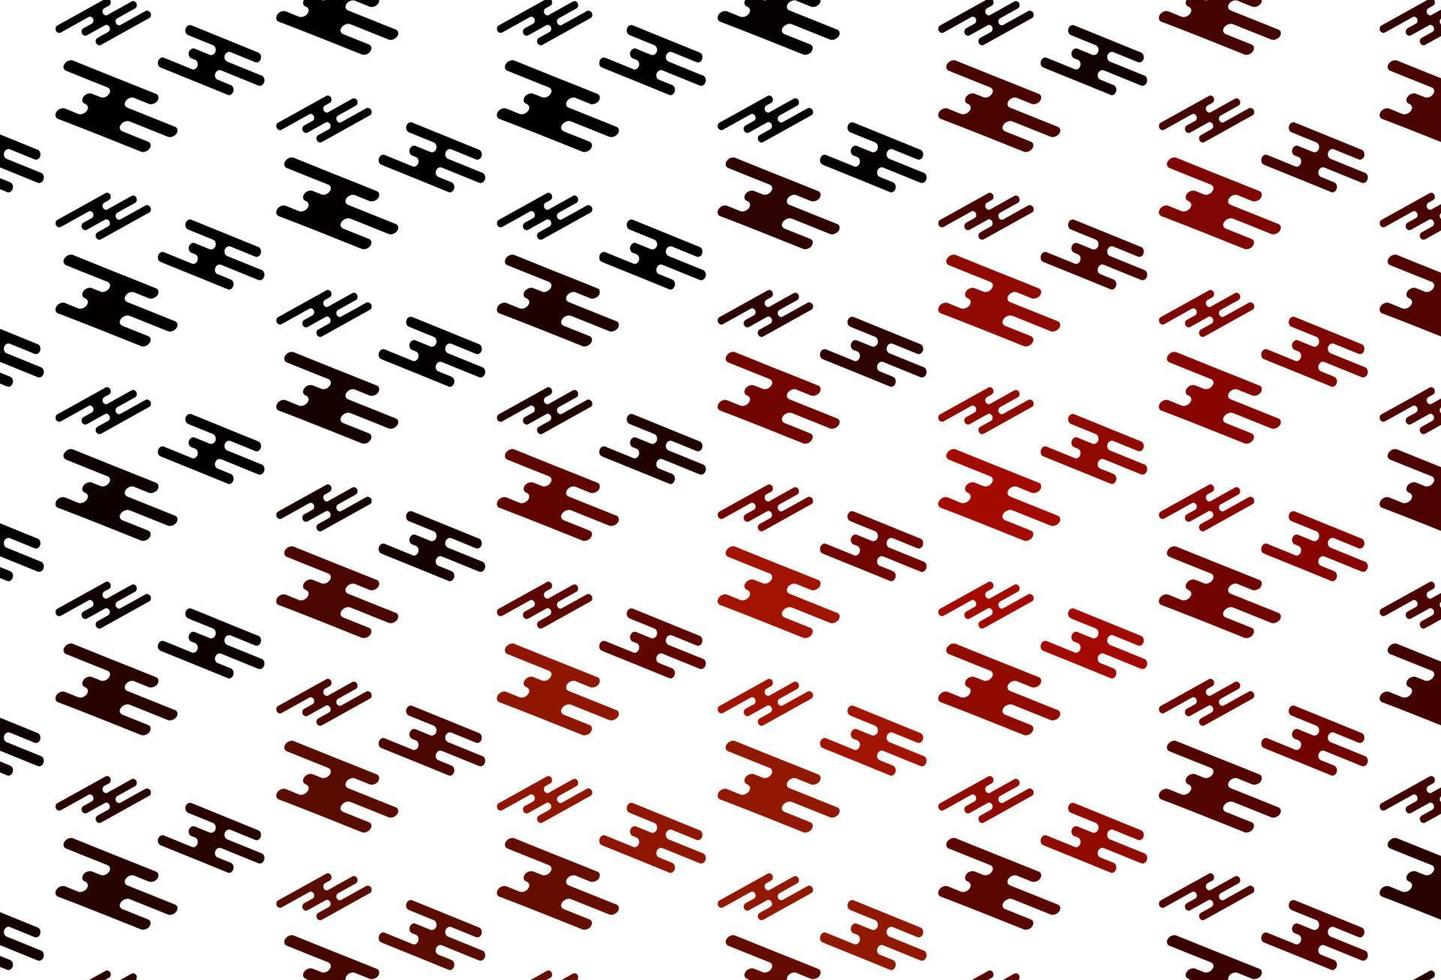 modelo de vetor vermelho claro com varas repetidas.